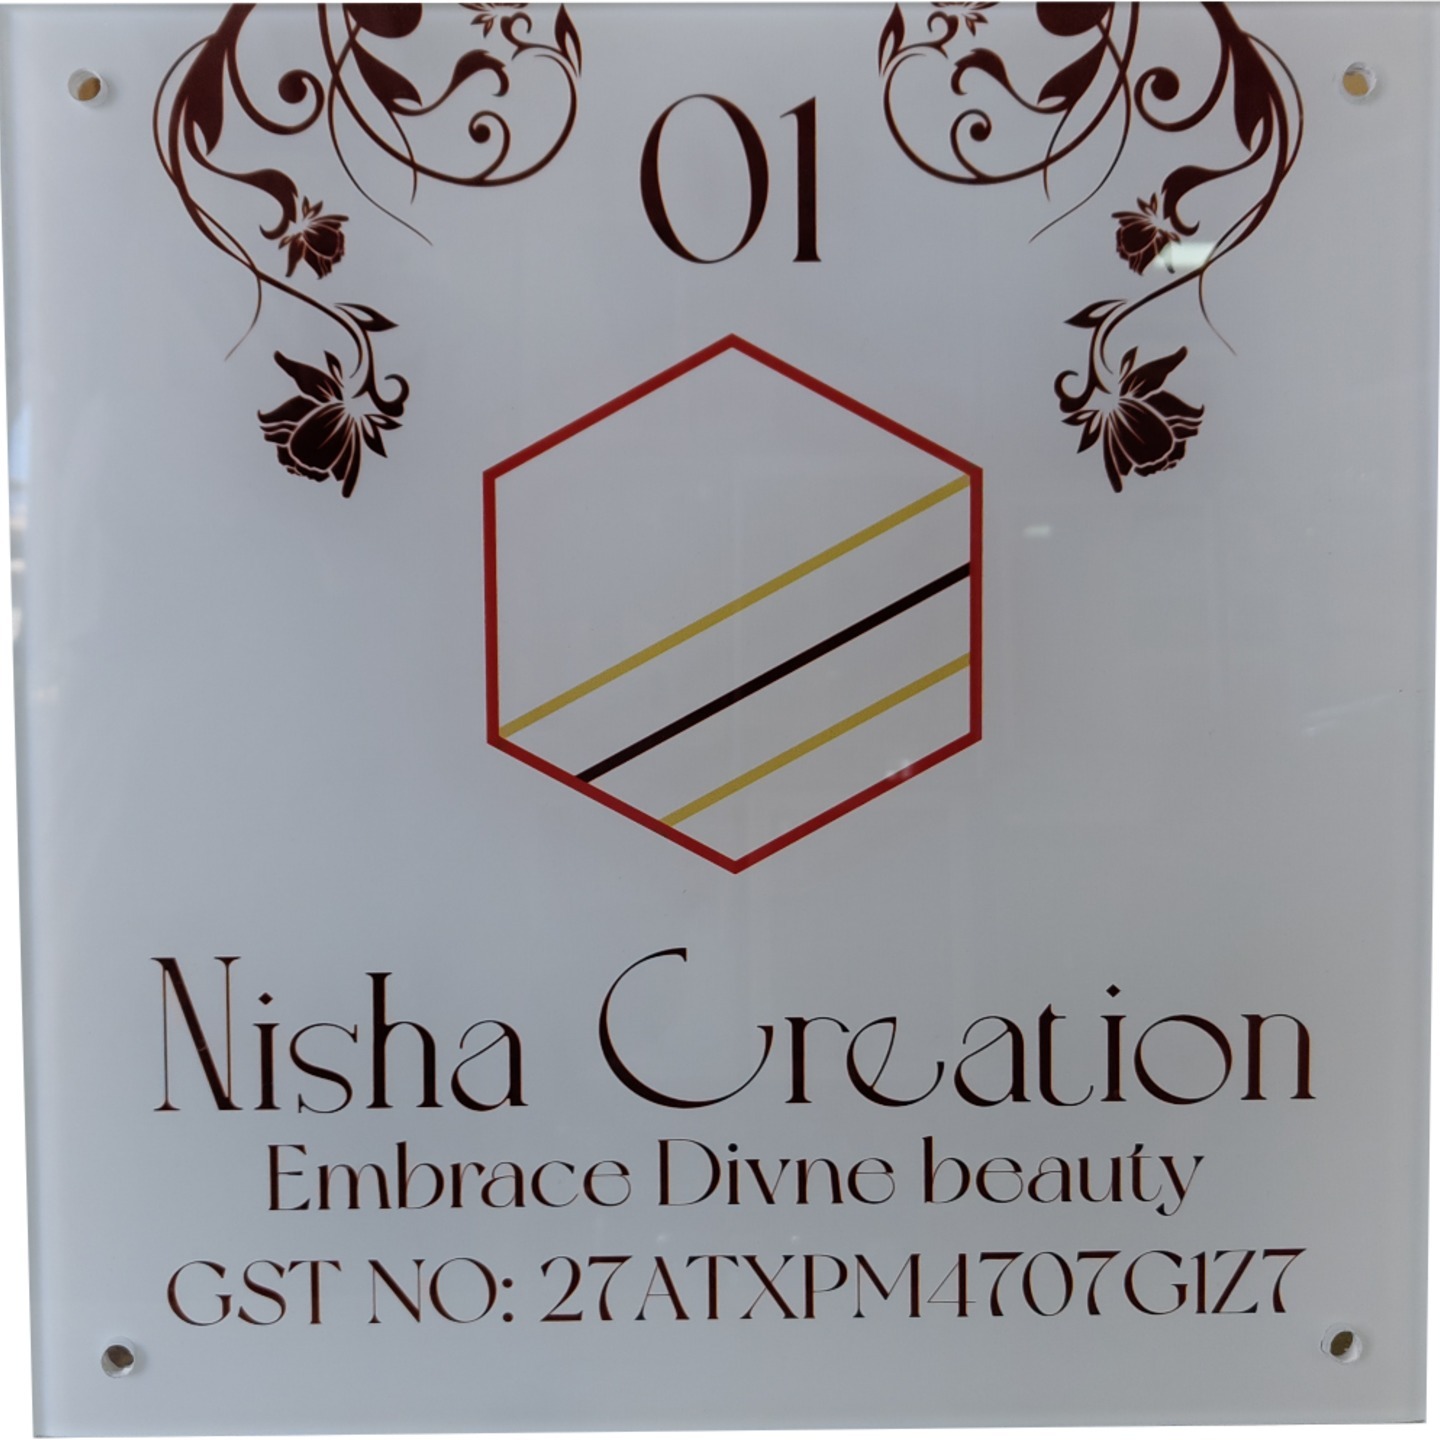 Nisha Creation